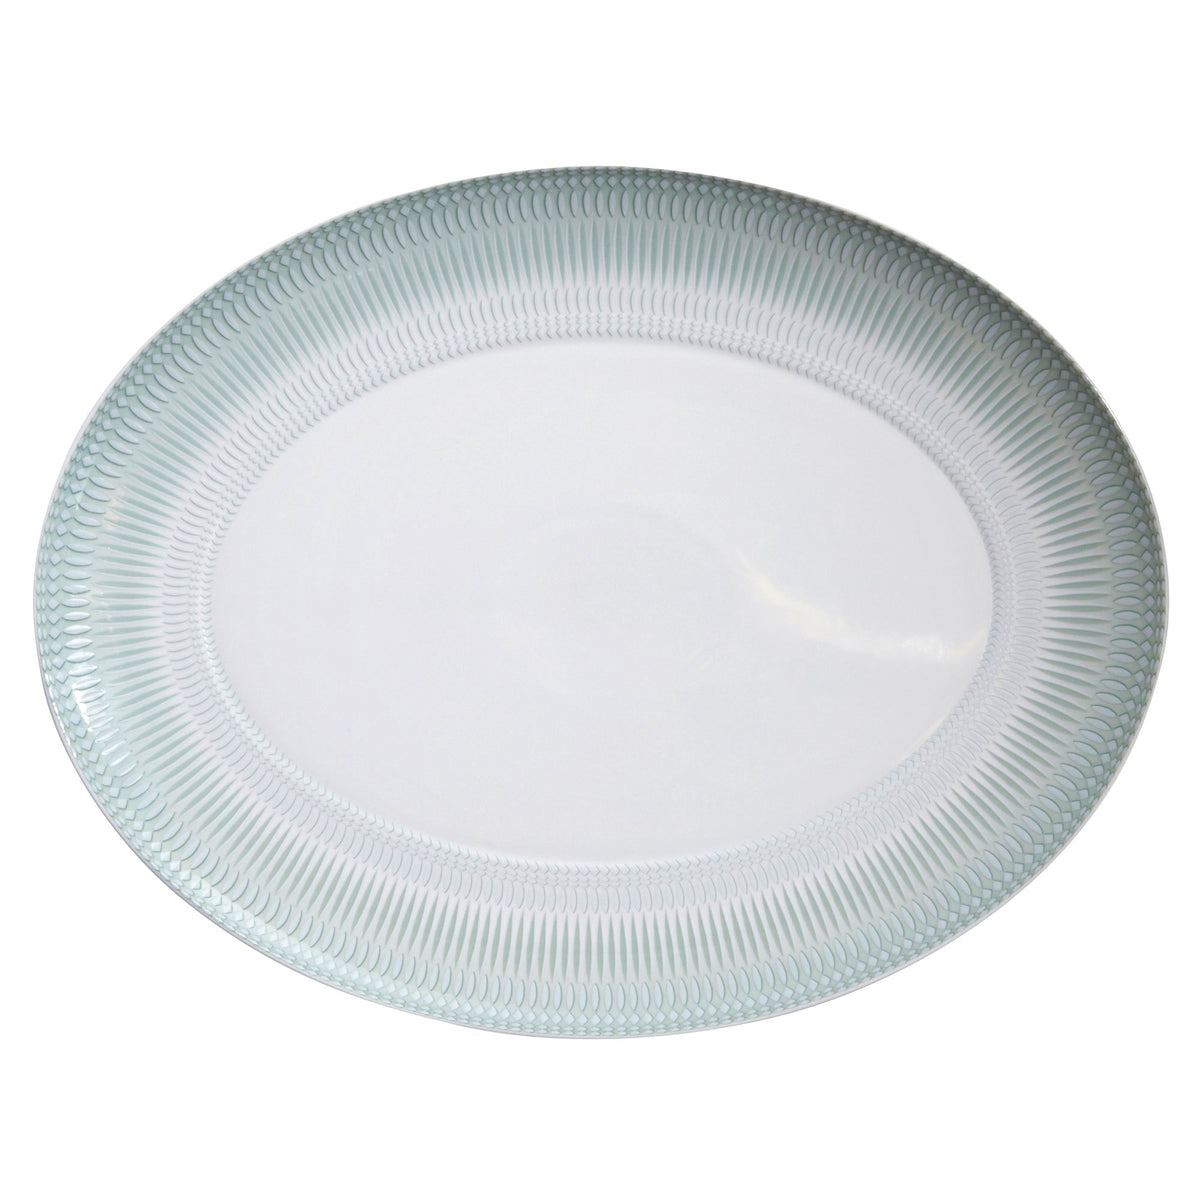 Venezia Large Oval Platter